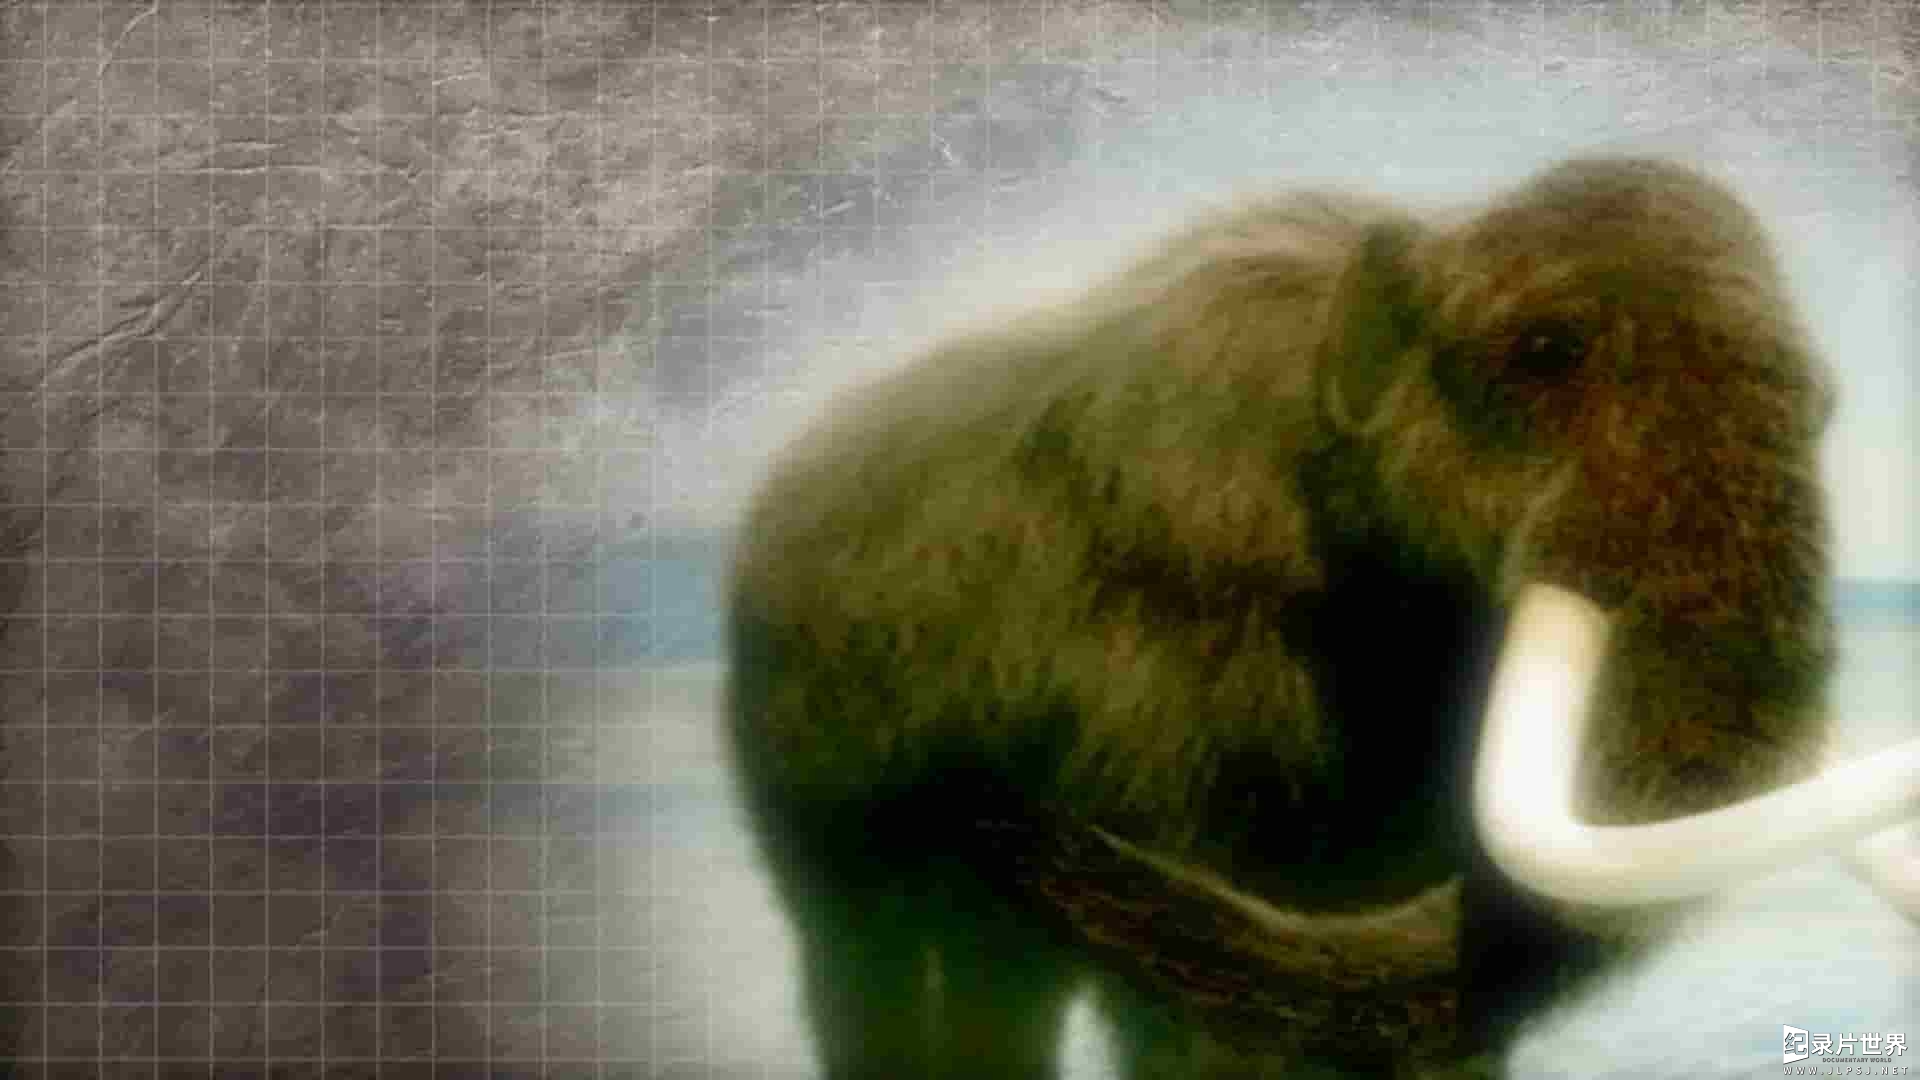 国家地理《挖掘猛犸象/出土的猛犸象 Mammoth Unearthed 2014》全1集